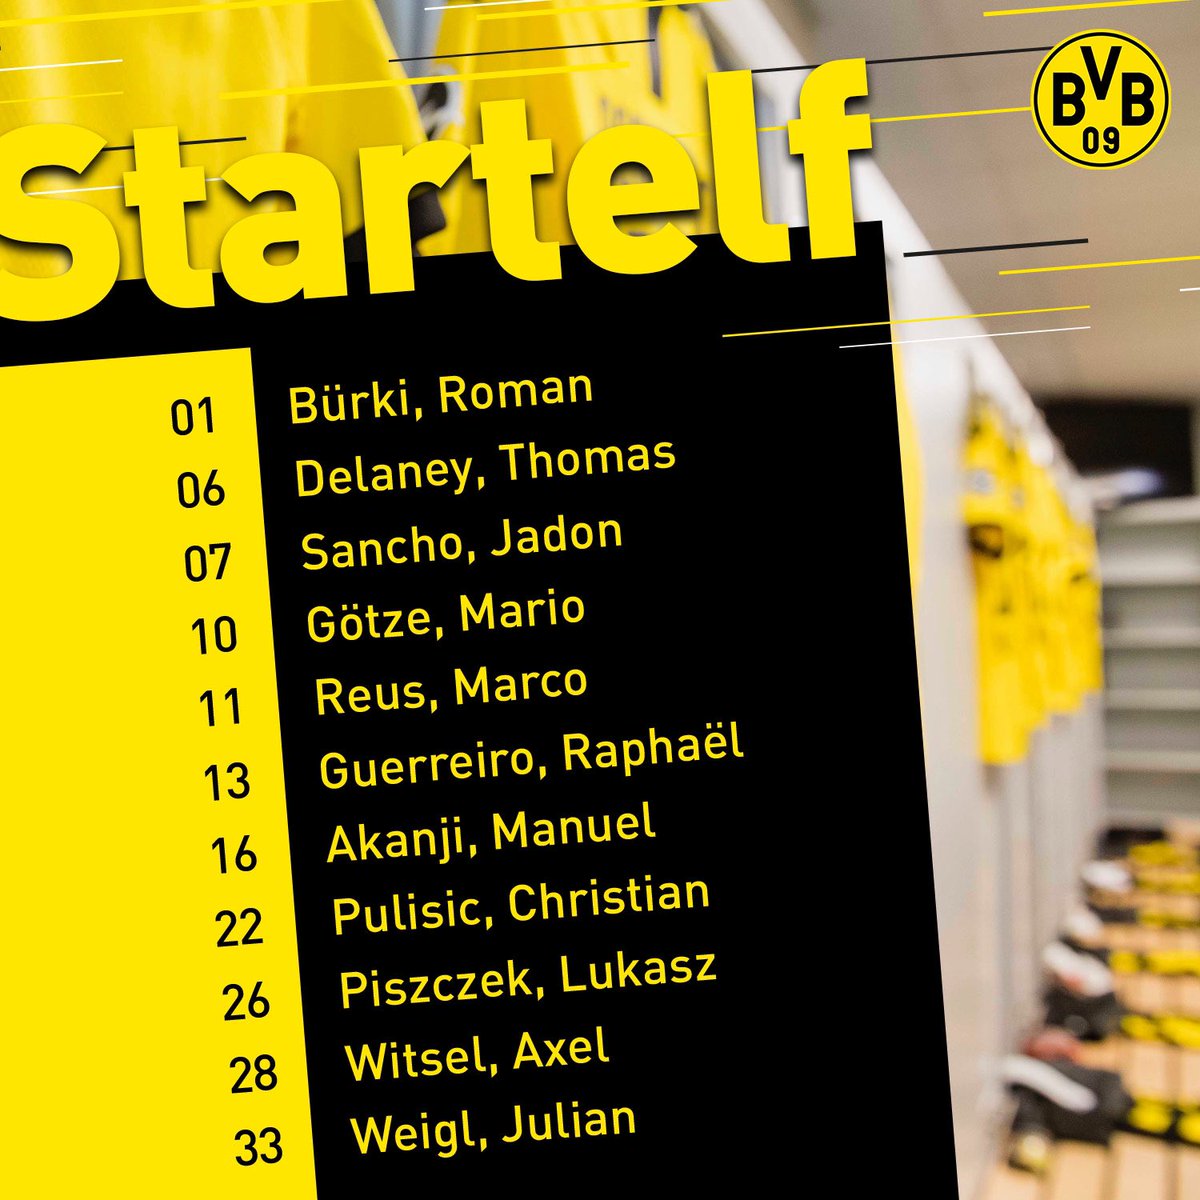 TRỰC TIẾP Monchengladbach vs Dortmund: Đội hình dự kiến  - Bóng Đá